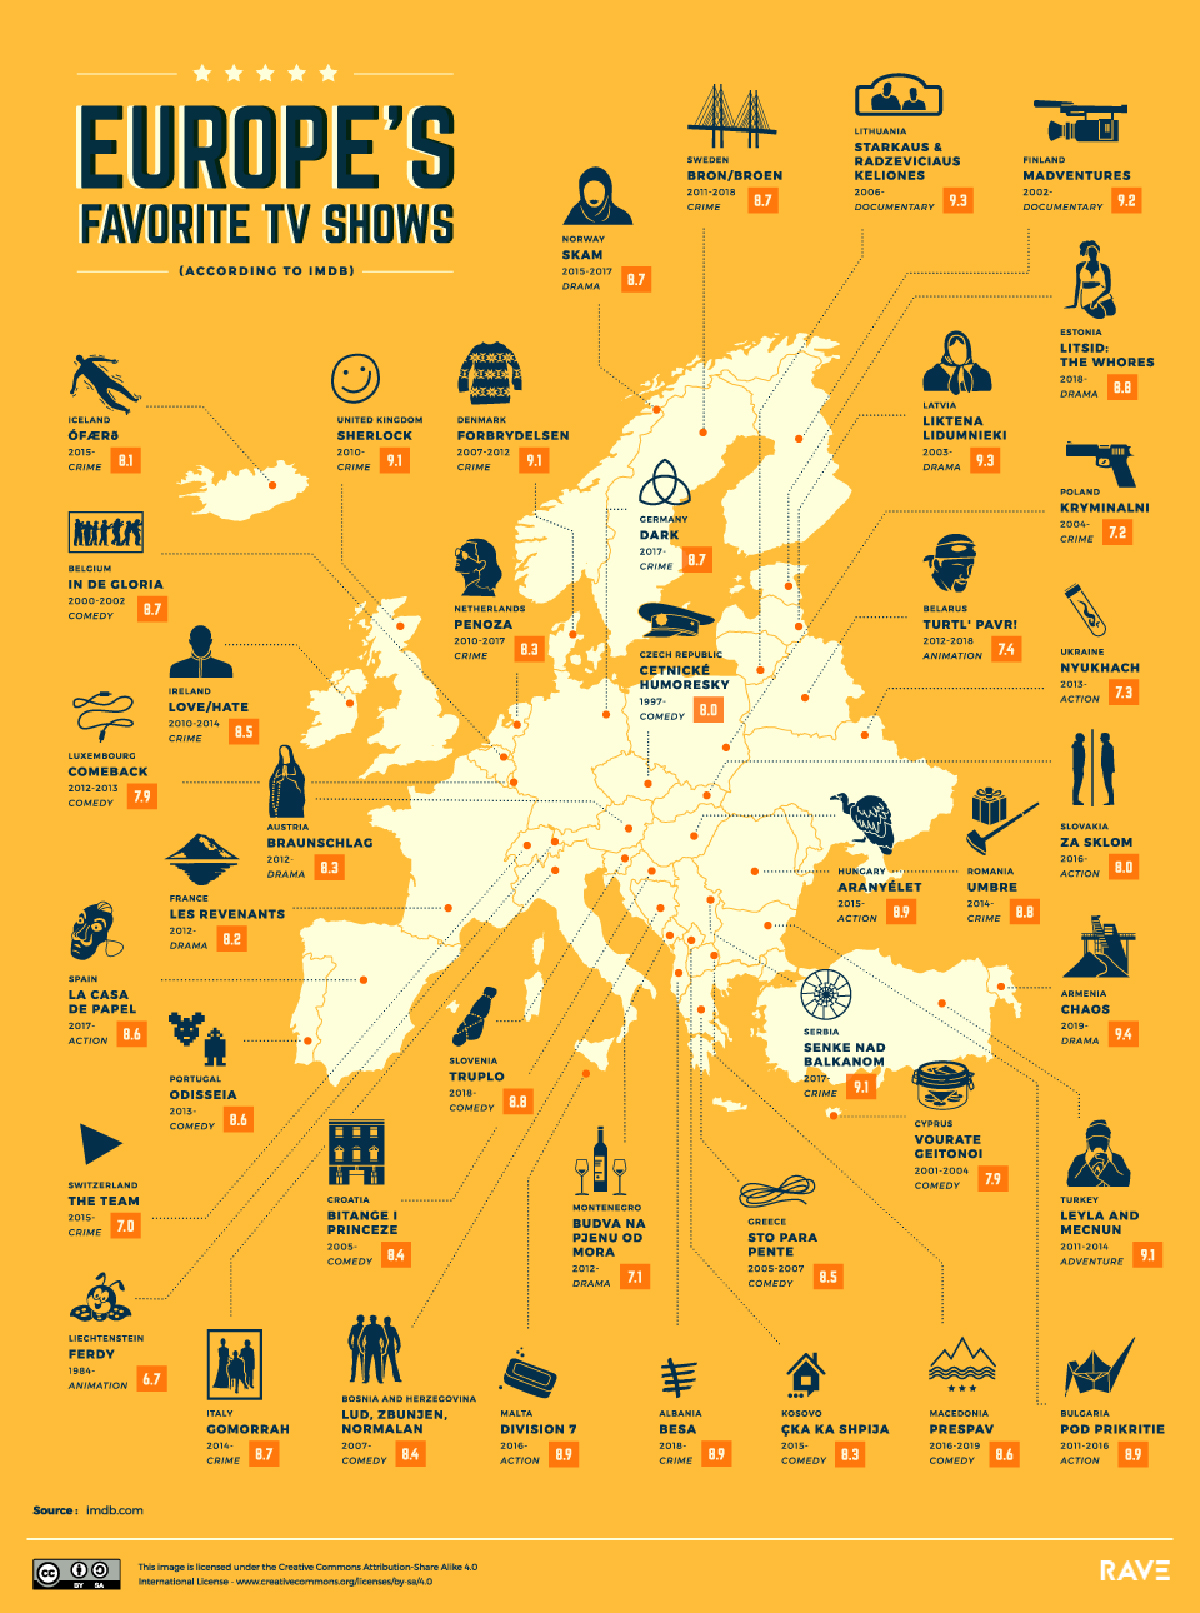 Le serie tv preferite in Europa